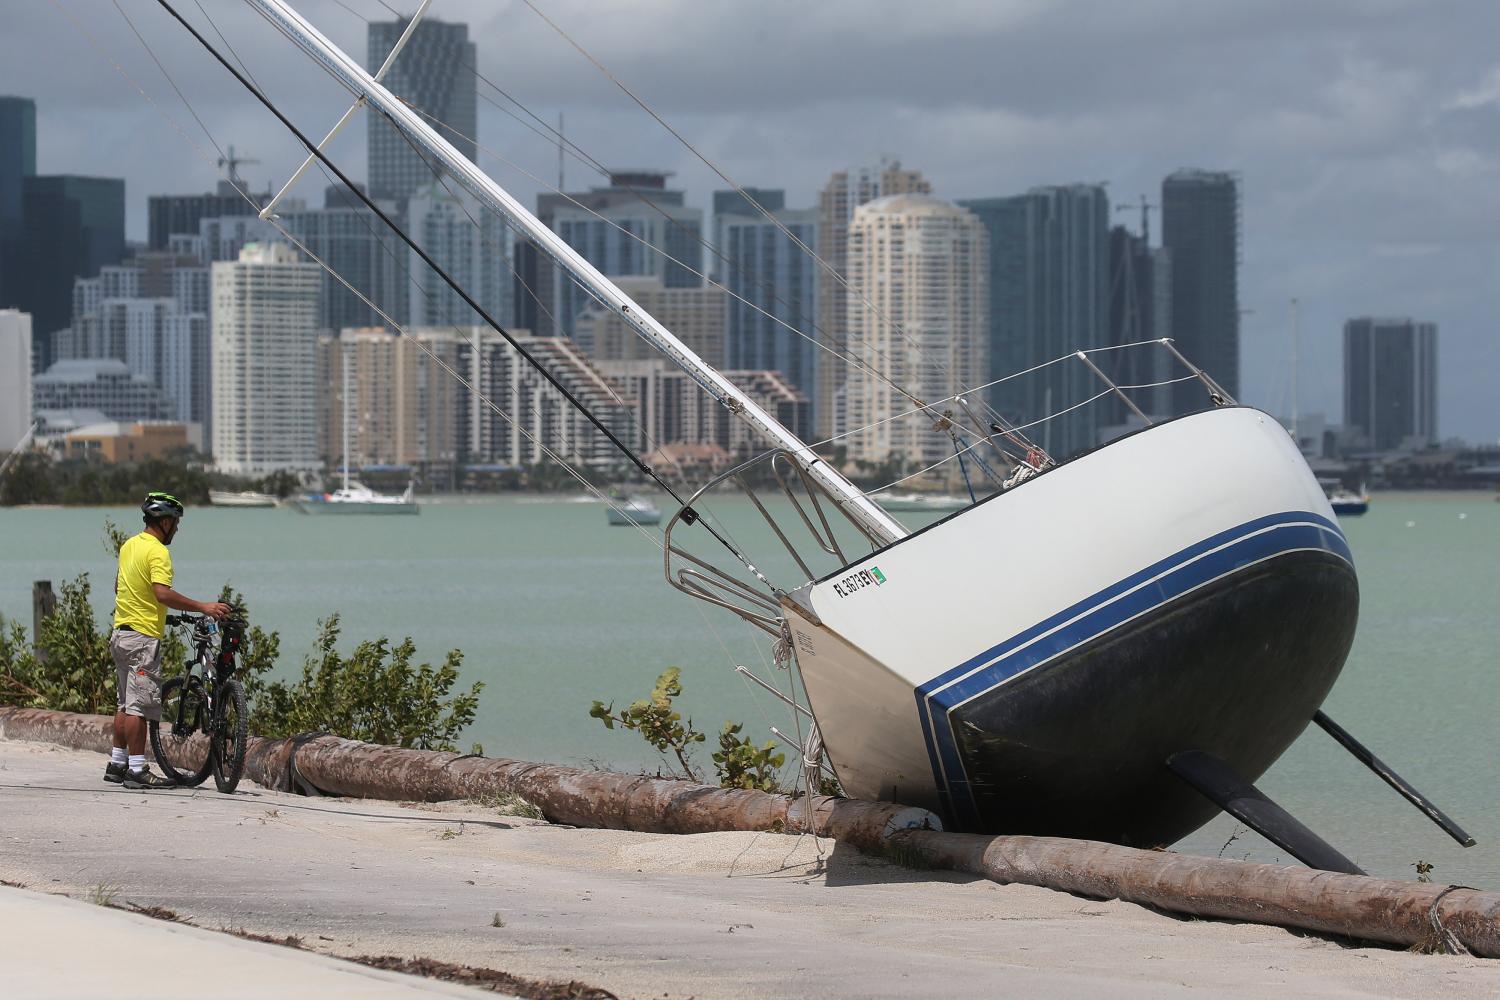 LUEGO DEL HURACÁN. Un hombre mira un velero que quedó a metros de una calle luego del paso de Irma. REUTERS